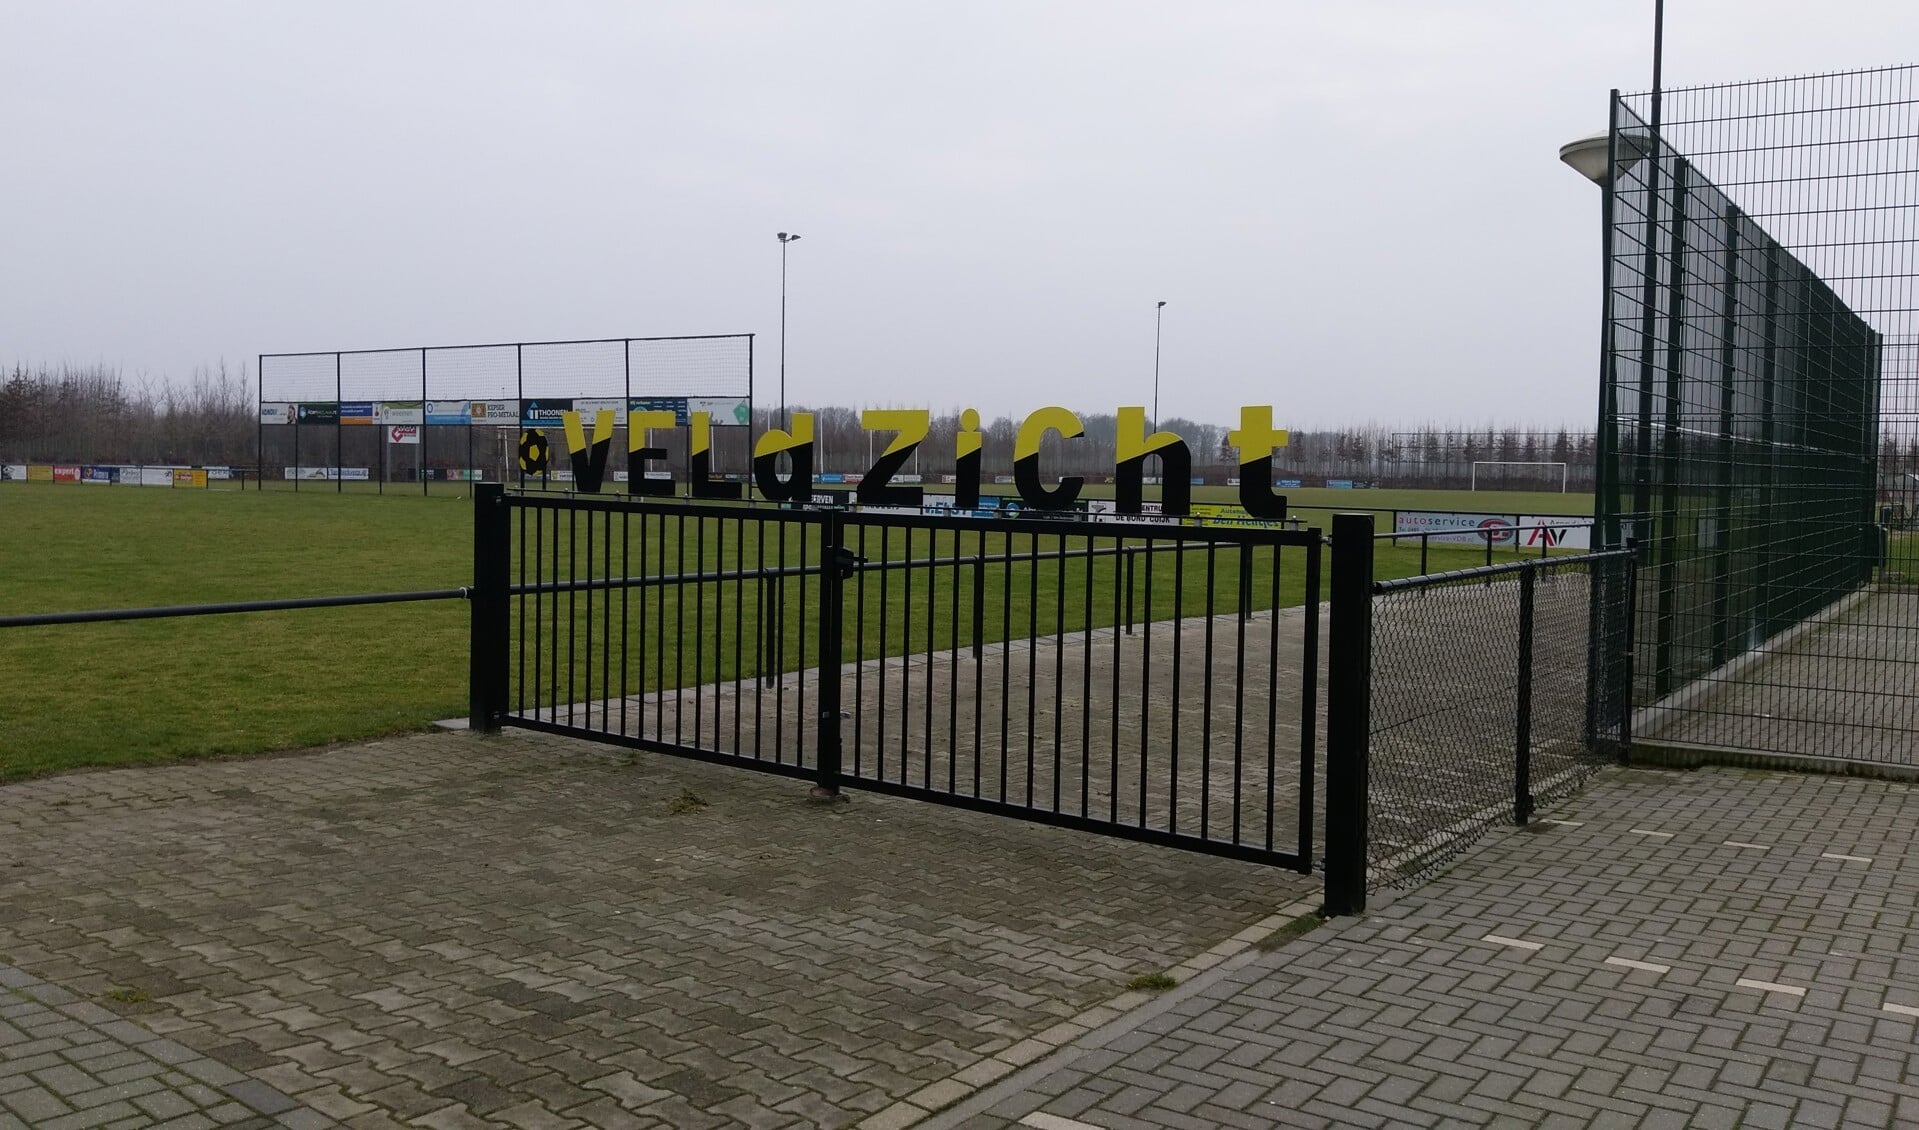 Sportpark 't Veldzicht in Sint Agatha. 